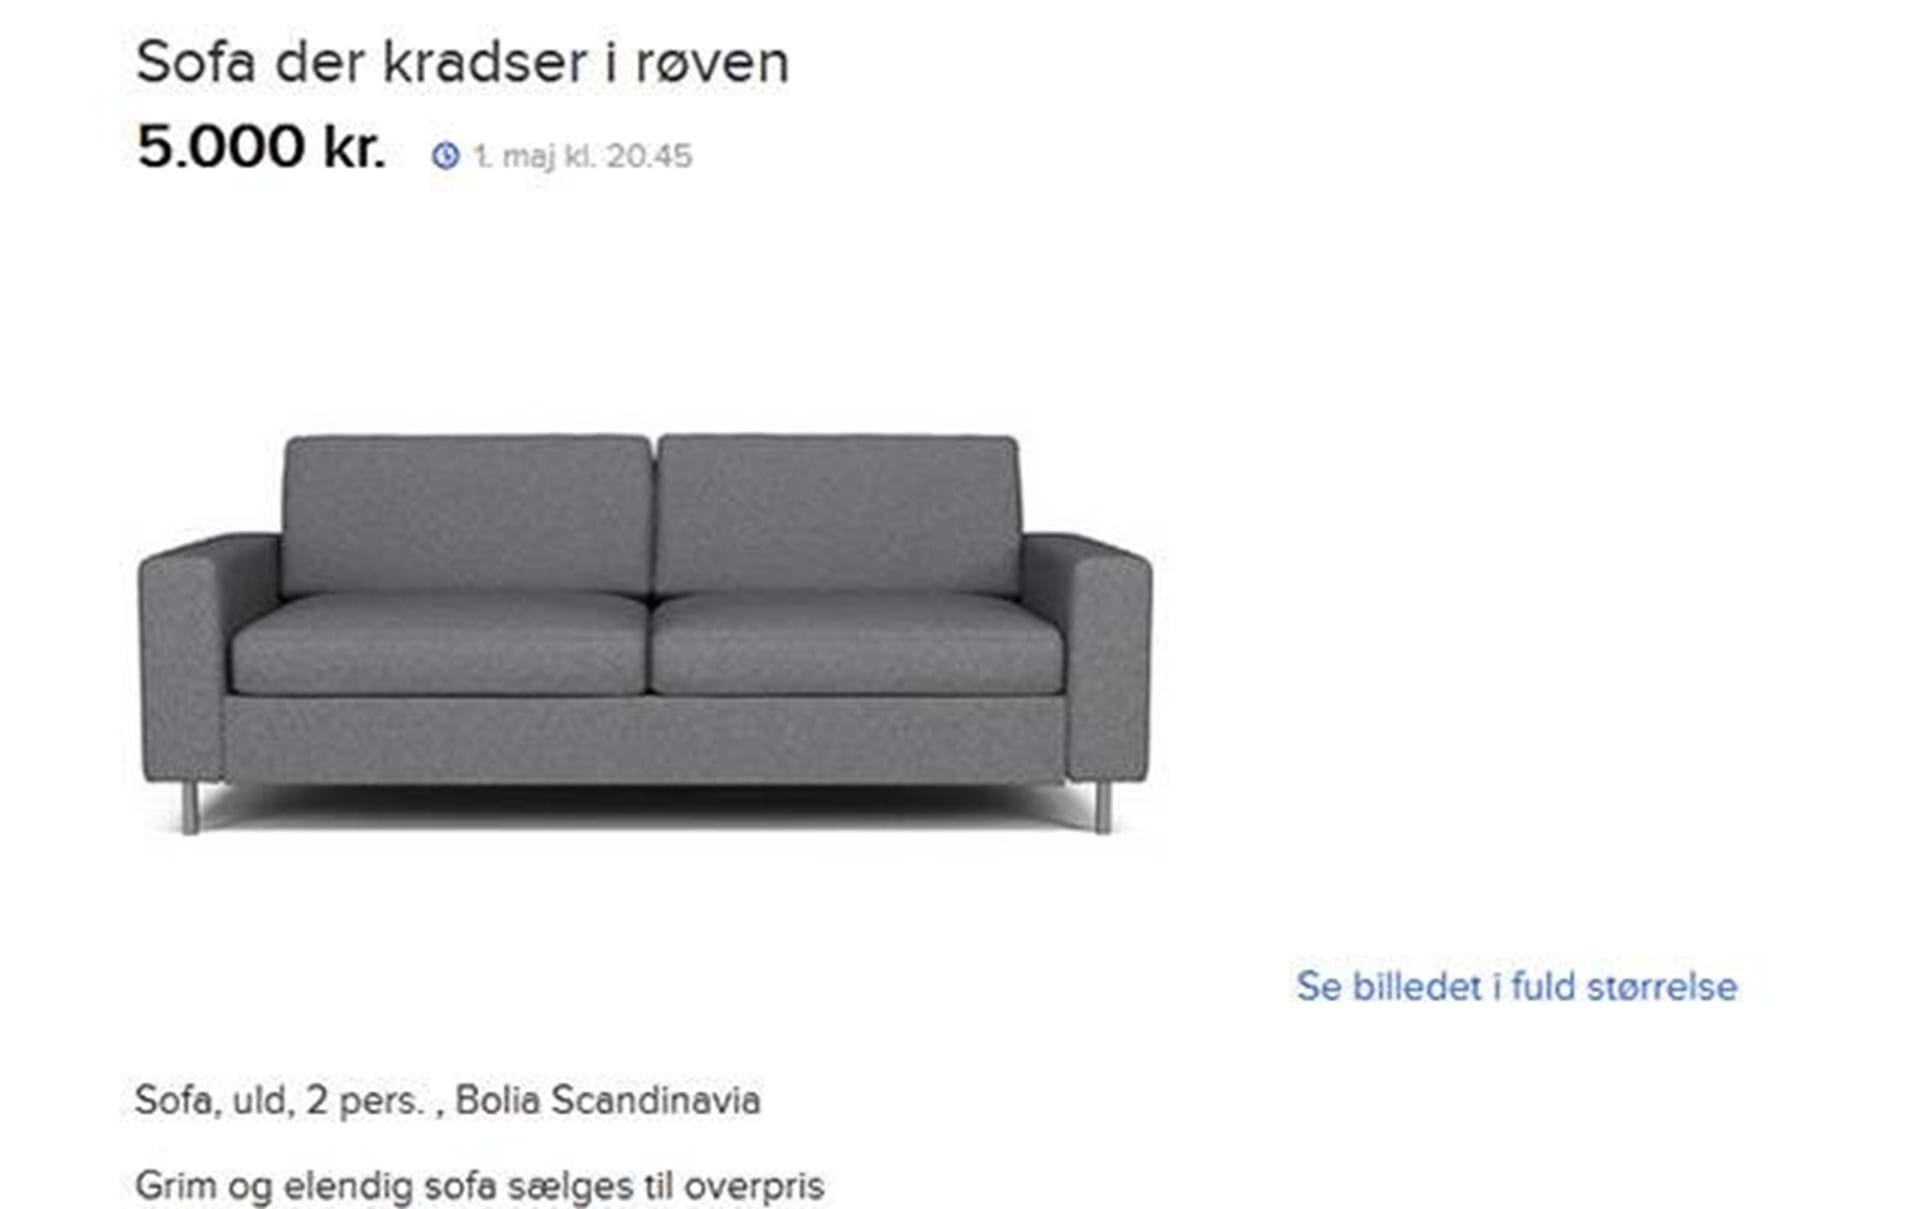 Vandret Isolere snatch Røvkradsende sofa'-sælger får svar fra møbelfirma - Euroman